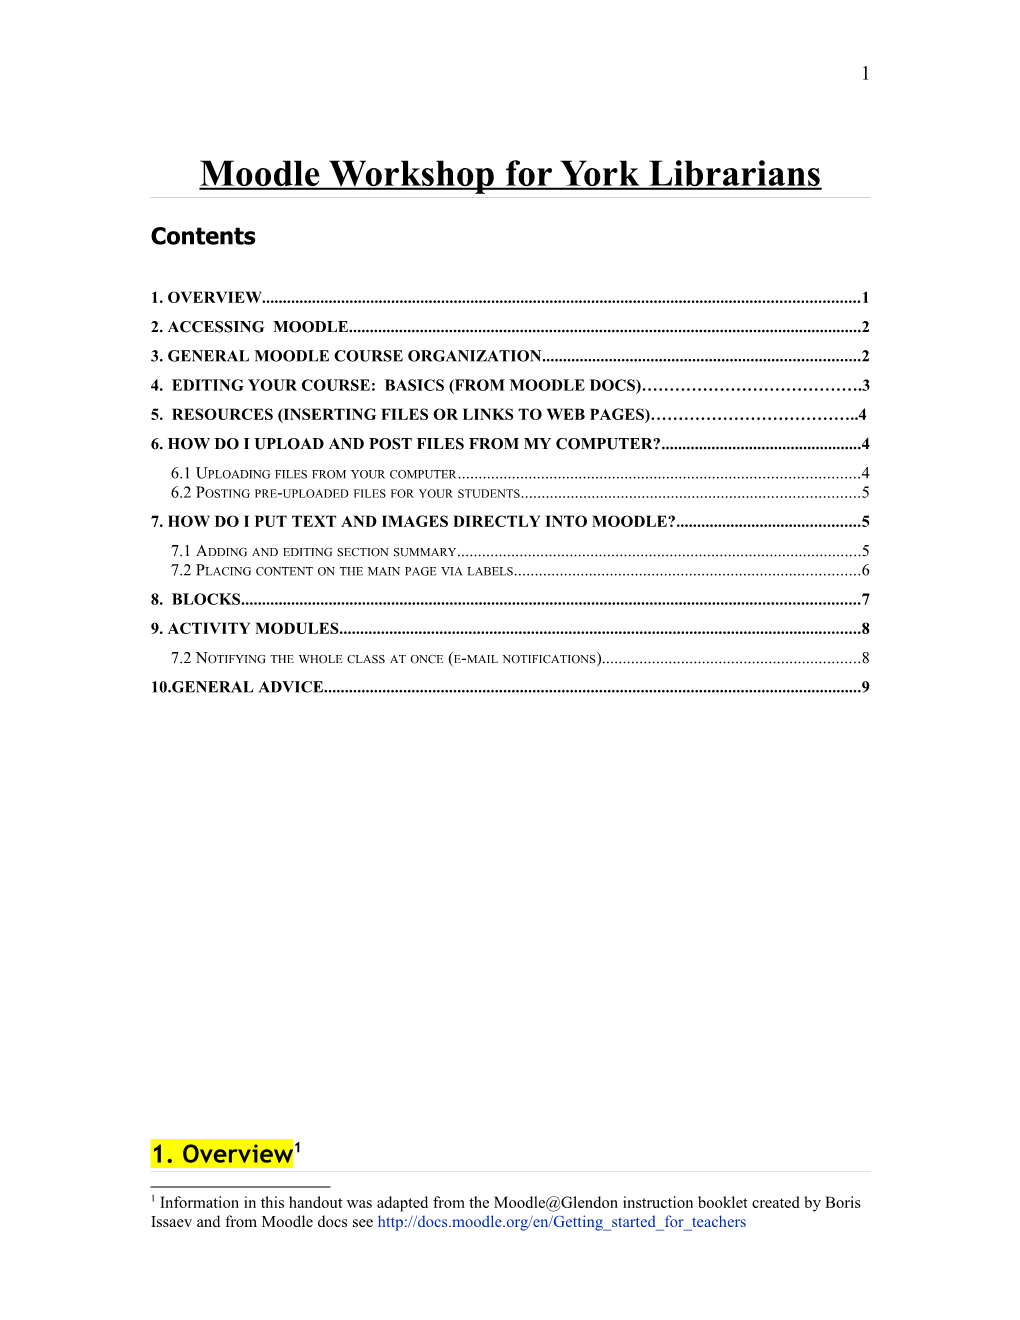 Moodle Workshop for York Librarians